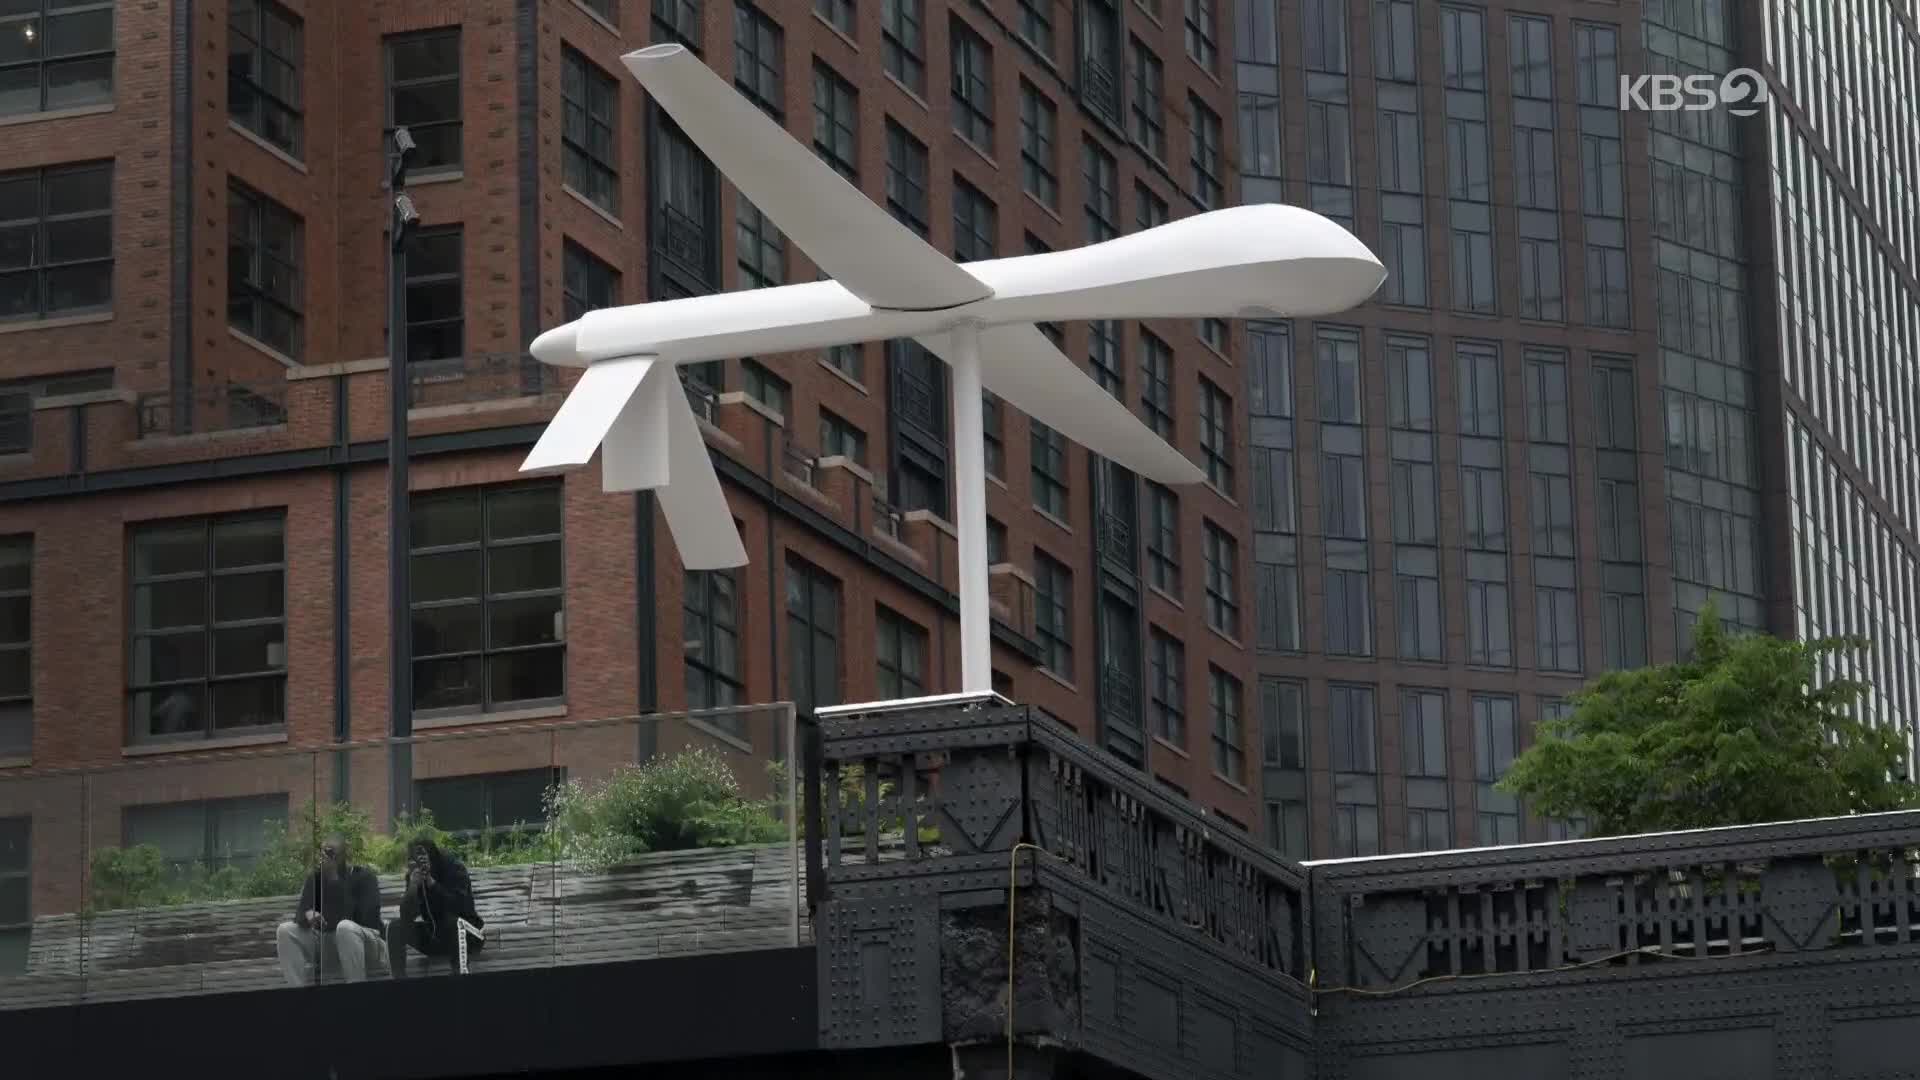 [지구촌 포토] 뉴욕에 등장한 드론 조형물…기술 발전에 따르는 문제점 표현